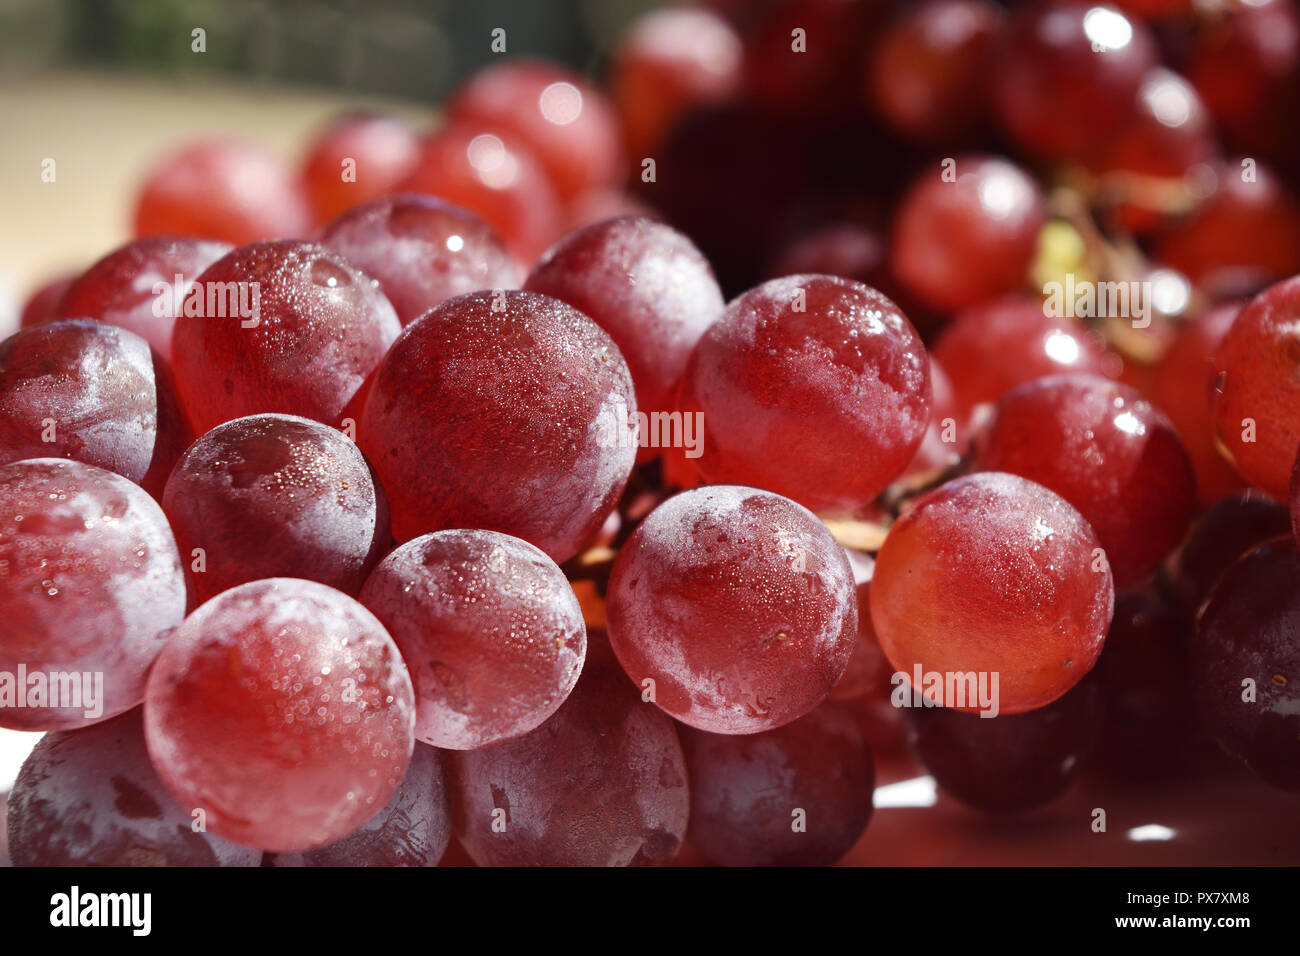 Gruppe der roten Traube Frucht mit Wassertropfen auf der Oberfläche, die Frucht ist als Essen und Wein Produktion gegessen Stockfoto